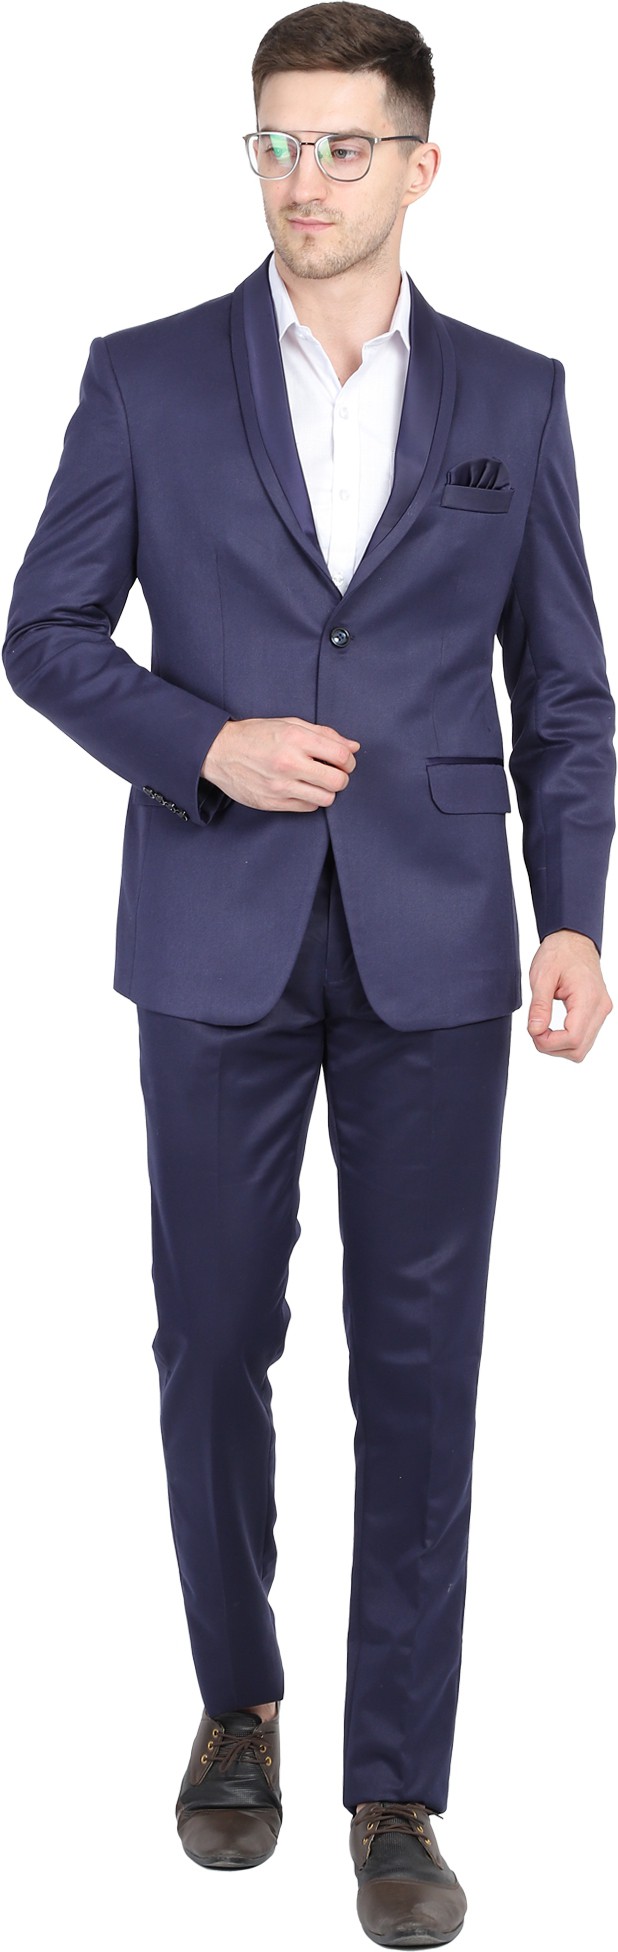 TAHVO Tuxedo Solid Men Suit ()